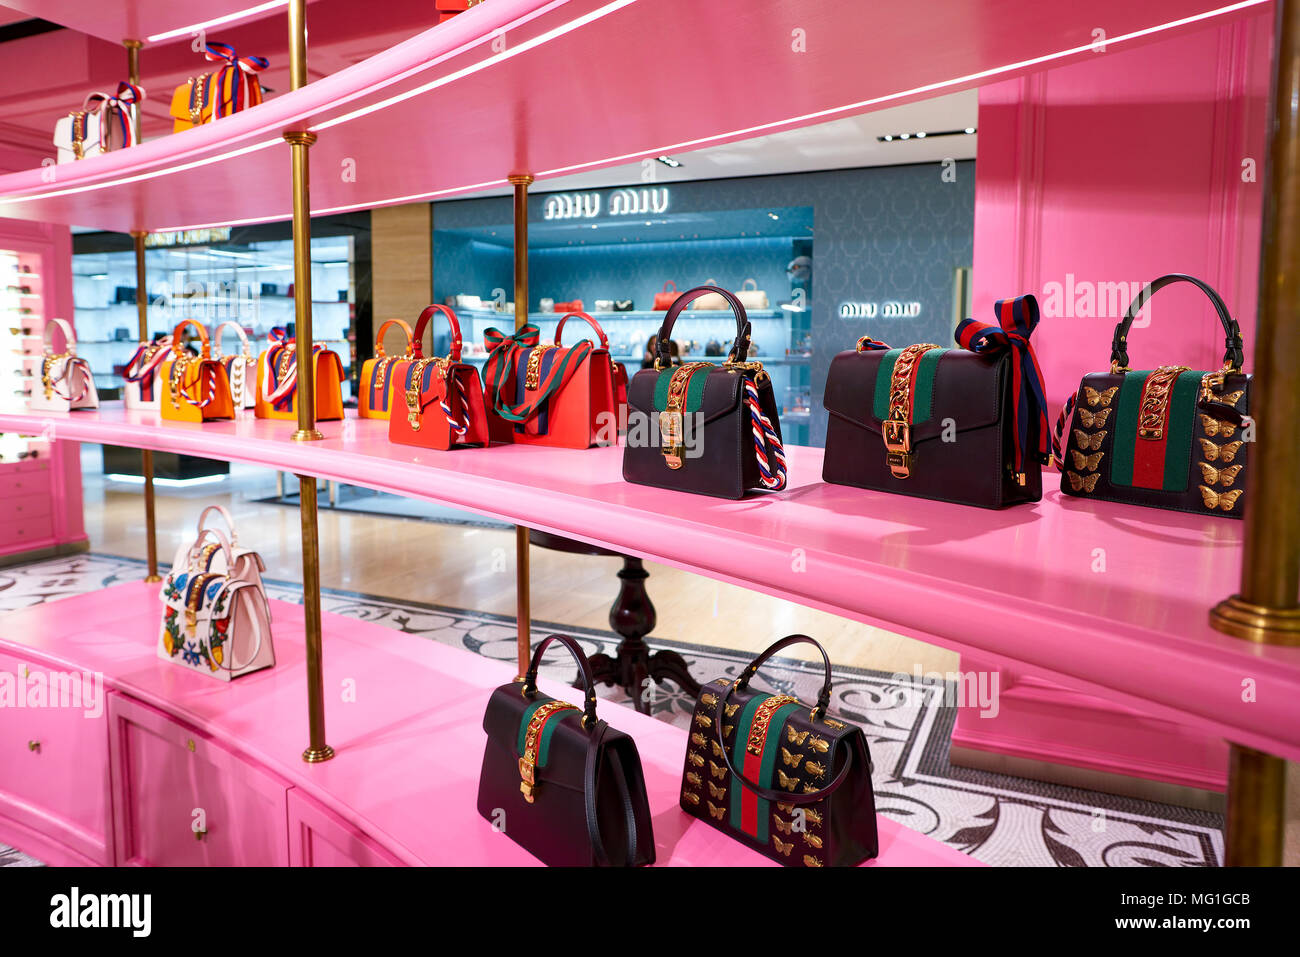 ROME, ITALY - CIRCA NOVEMBER, 2017: Gucci bags sit on display at a ...